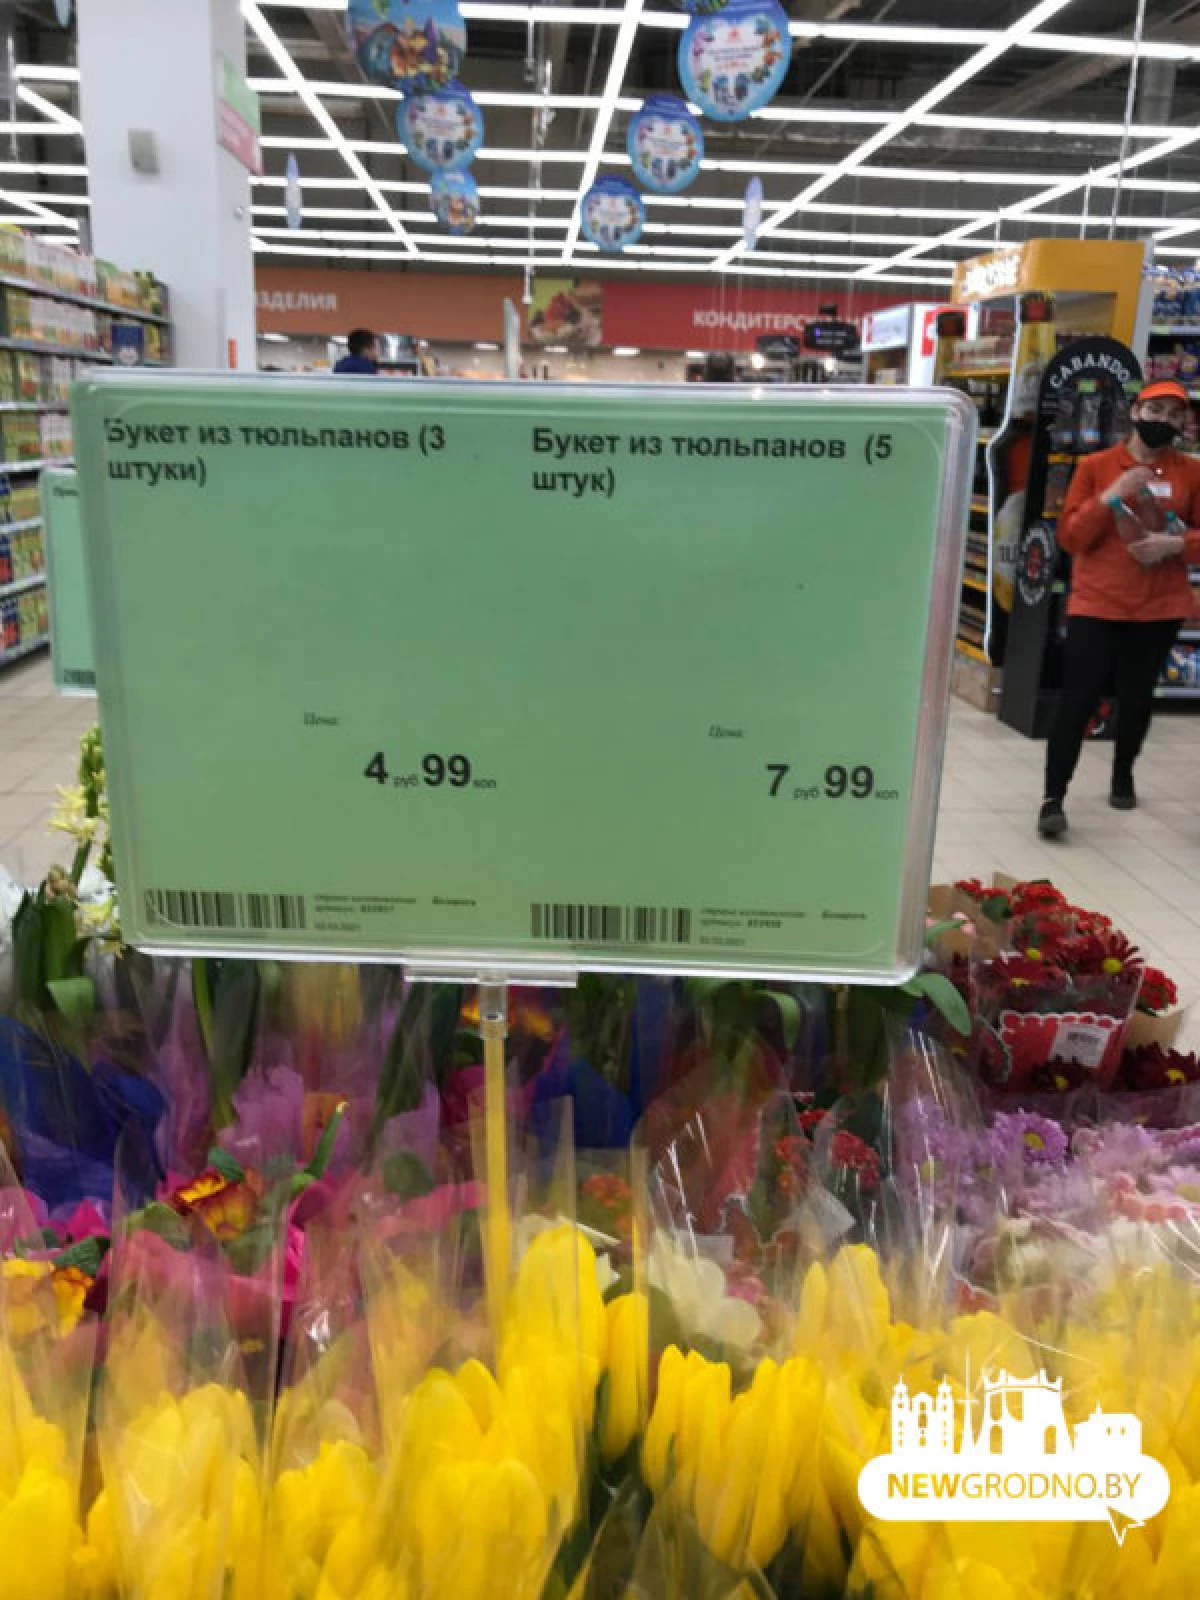 W przeddzień emocje: Przegląd cen dla kwiatów i sprzedawcy sprzedaży z Newgrodno 23323_9